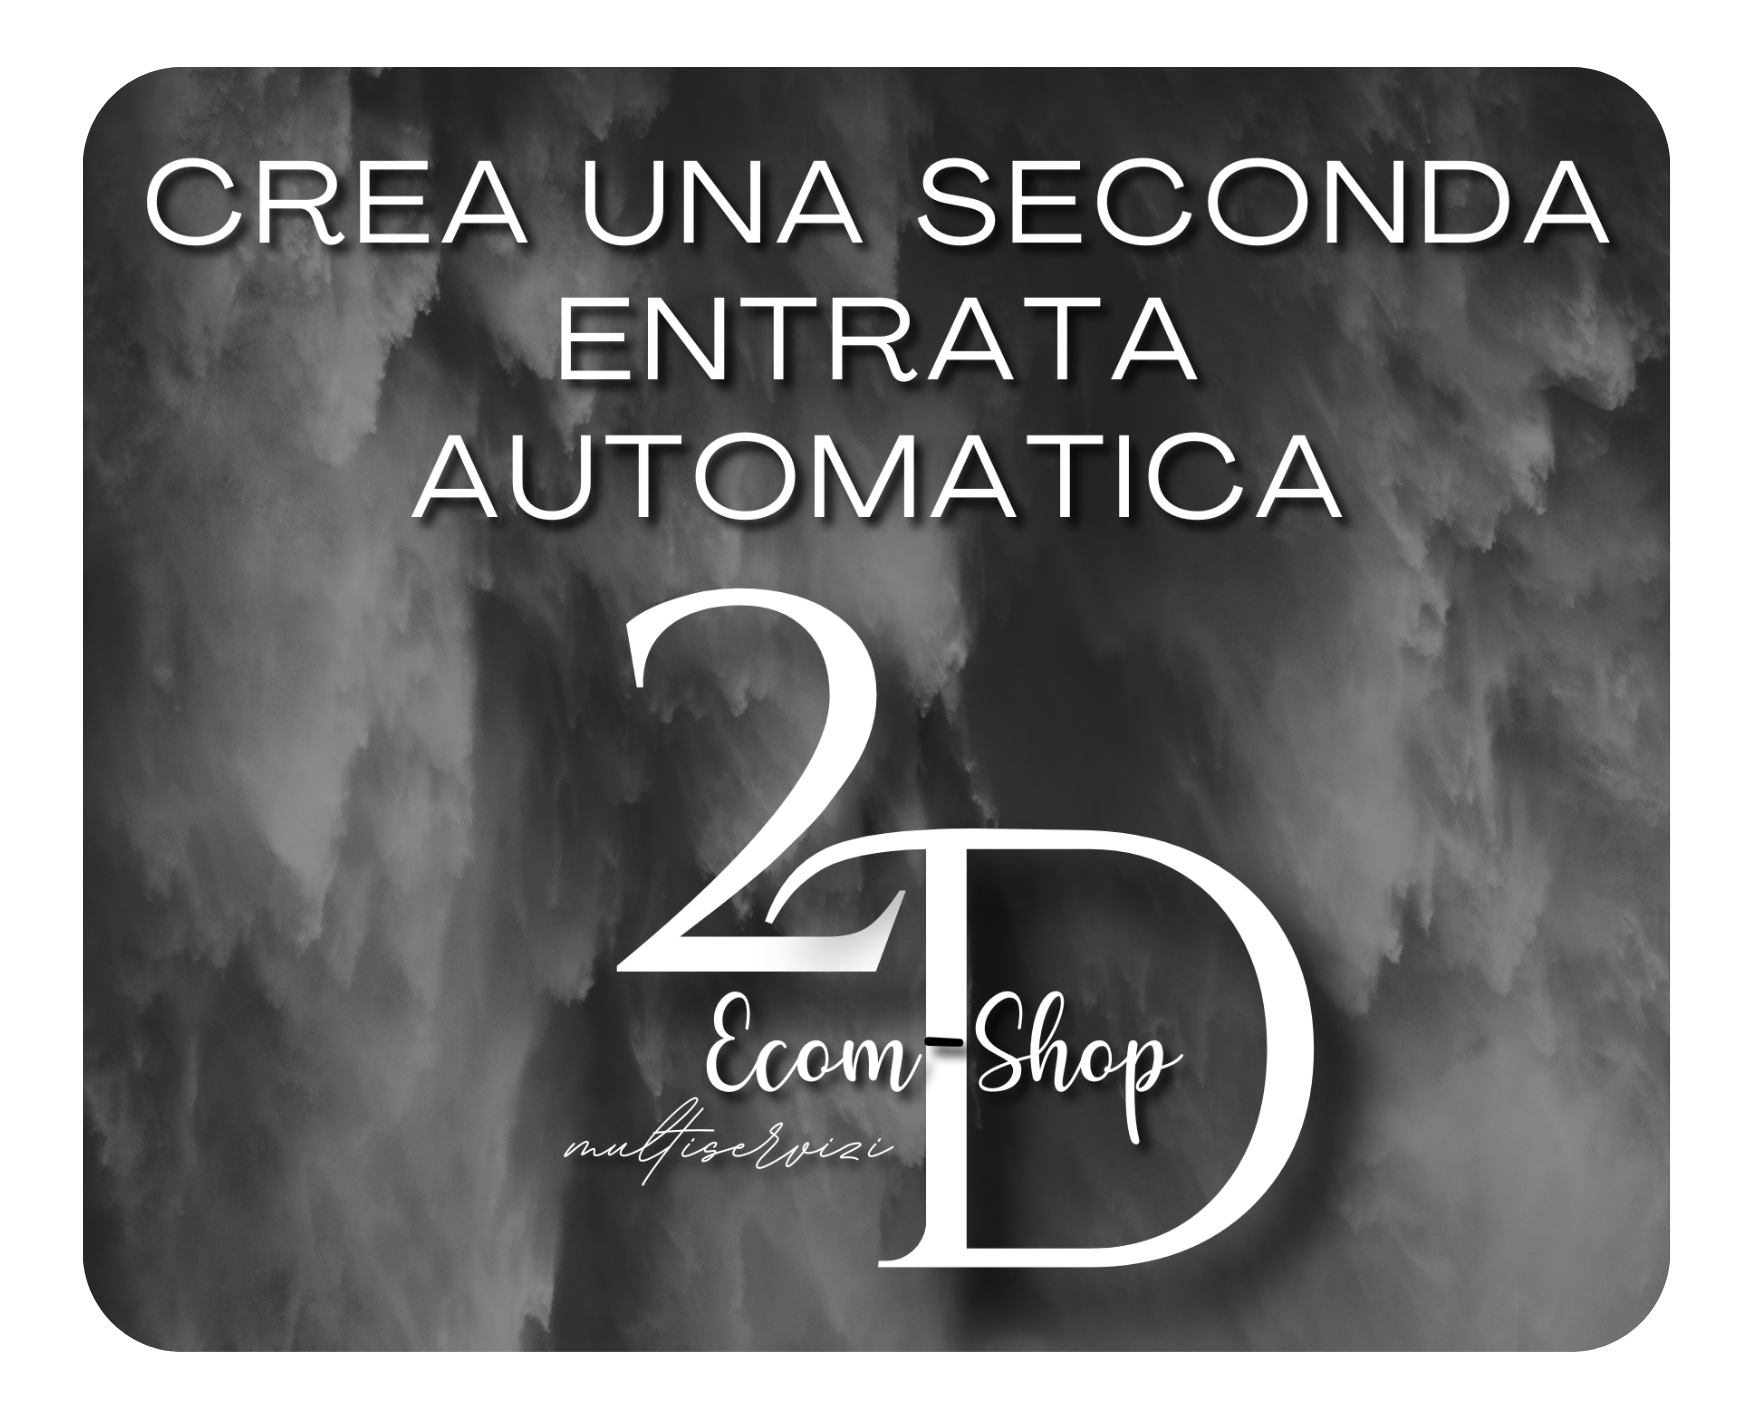 2D Ecom-Shop